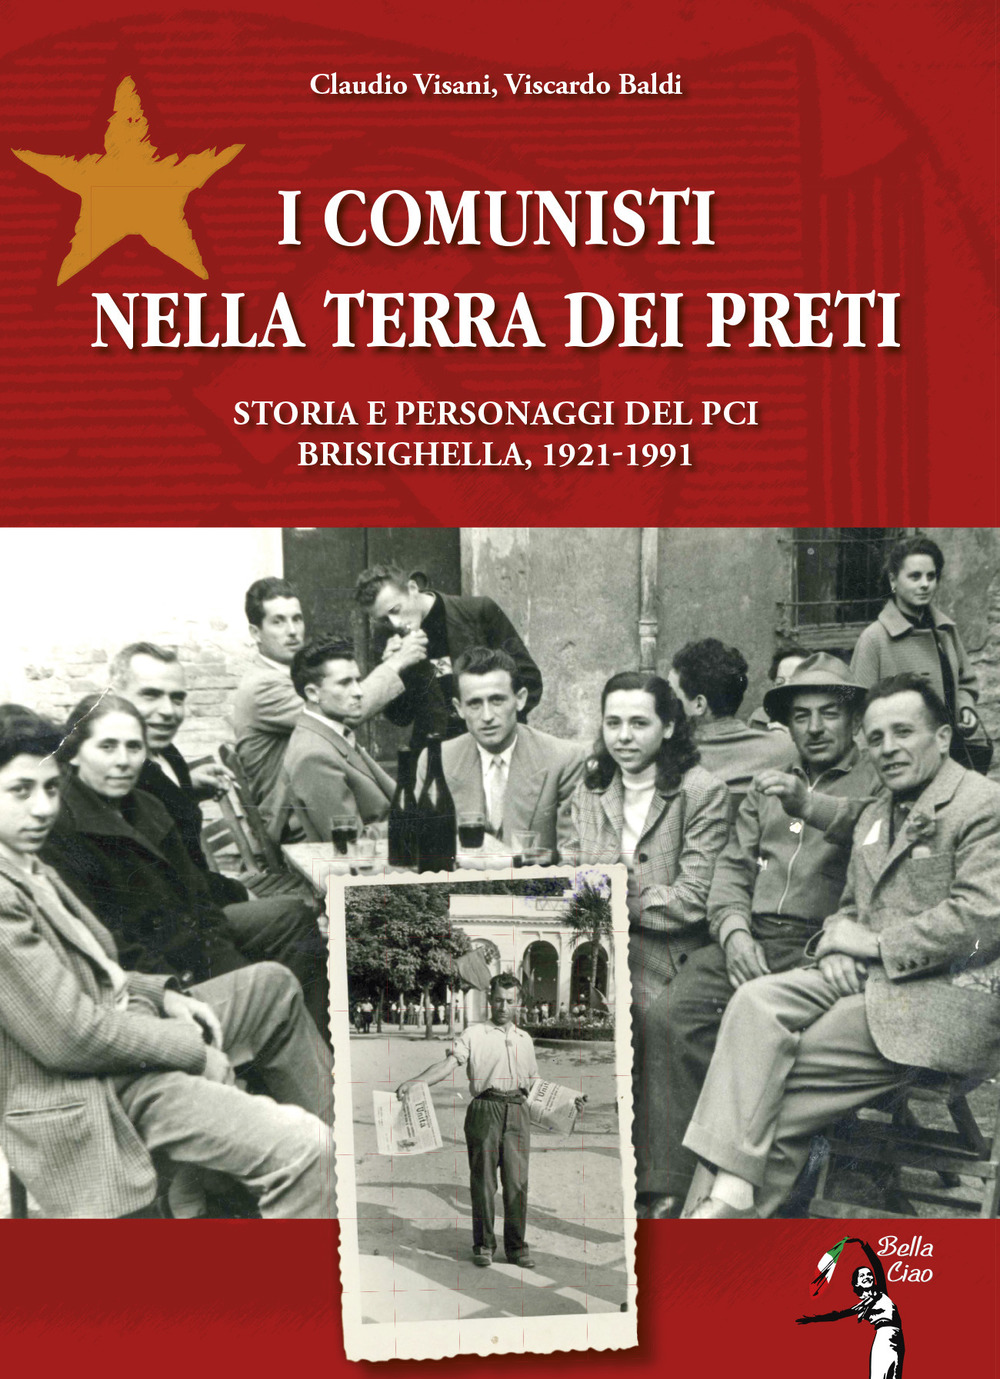 I comunisti nella terra dei preti. Storia e personaggi del PCI. Brisighella, 1921-1991